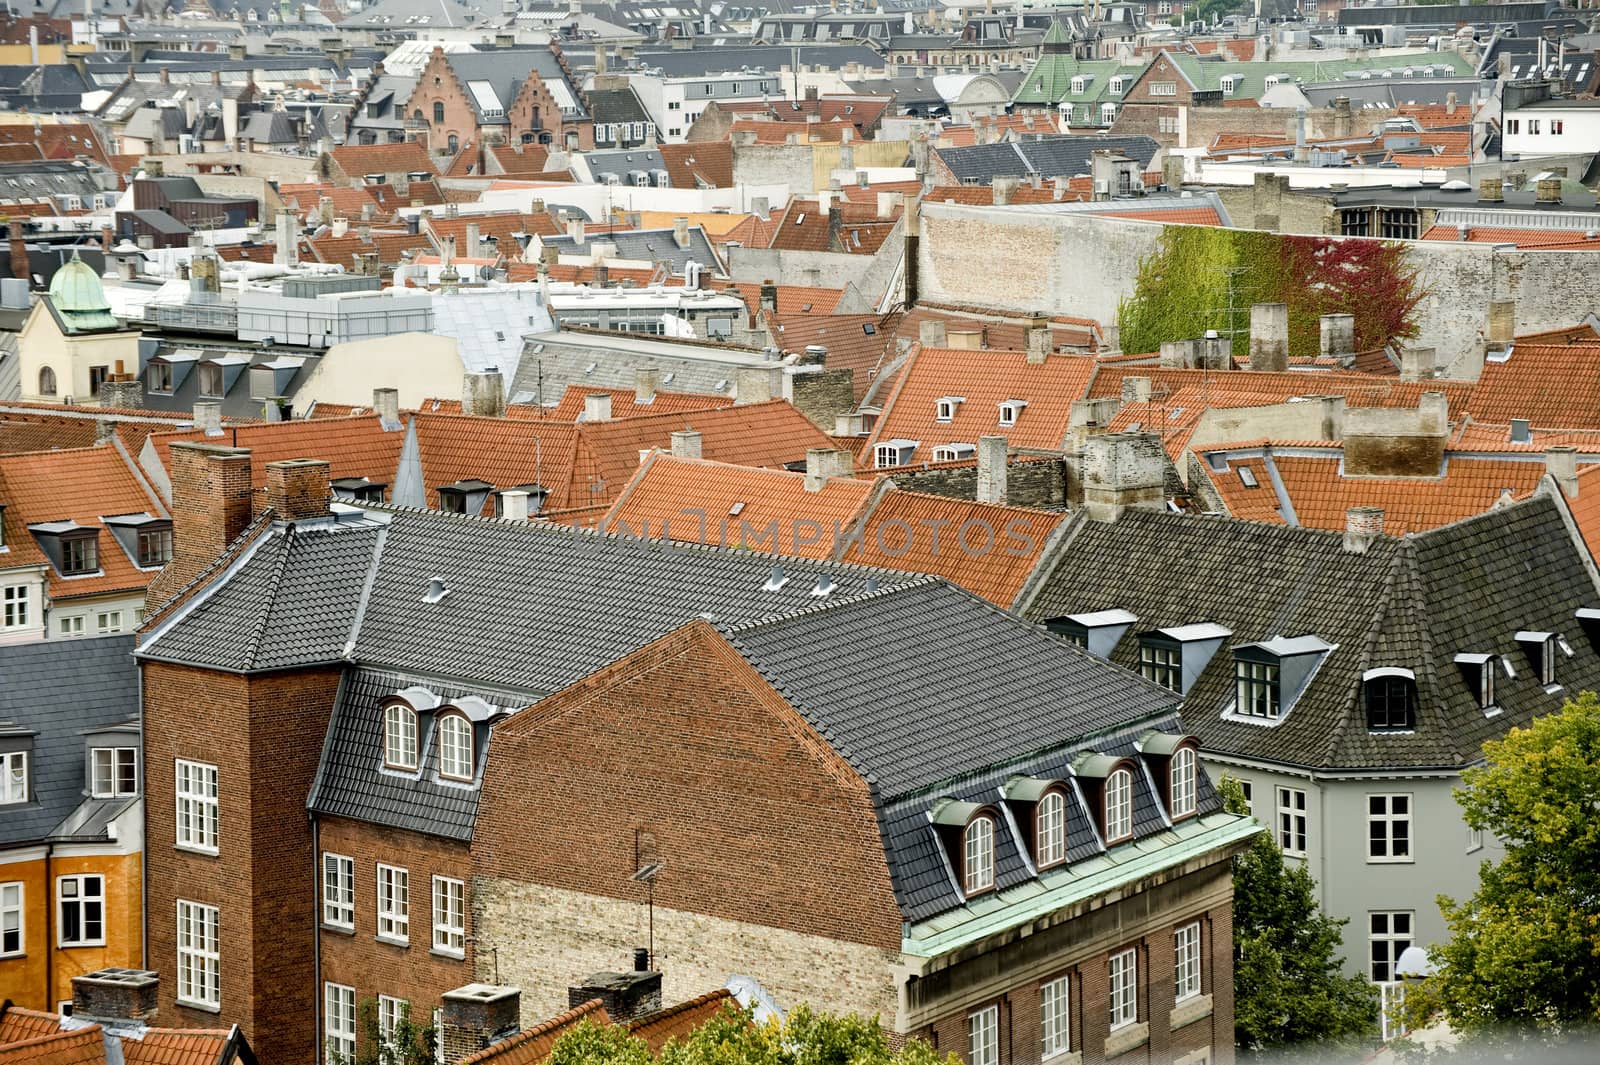 View of Copenhagen from height of bird's flight